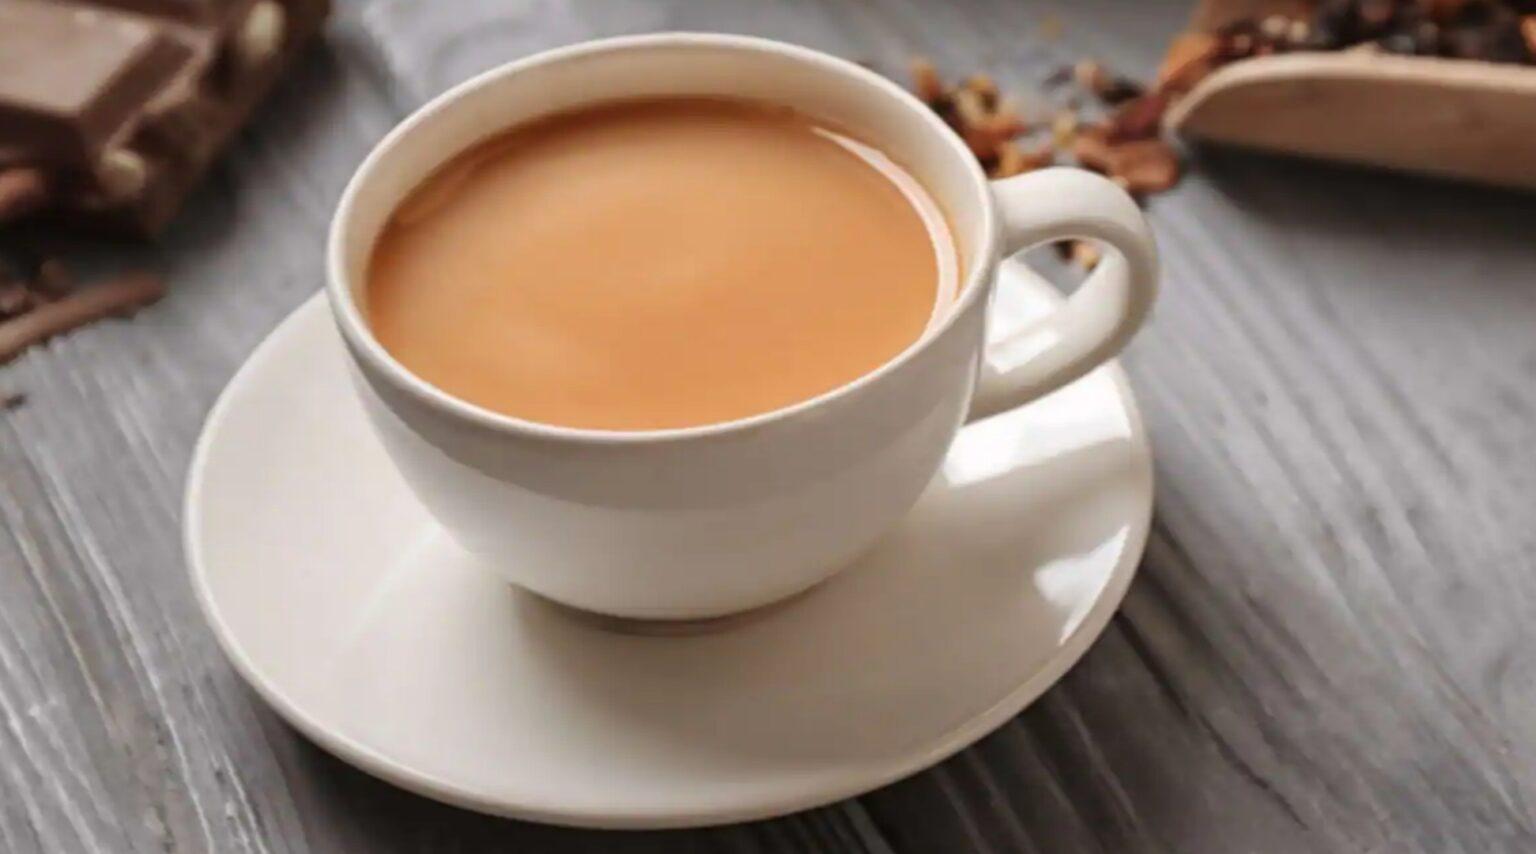 अगर आप भी पीतें हैं दोबारा गर्म करके चाय तो हो जाएं सावधान, आपकी सेहत के लिए है हानिकारक।